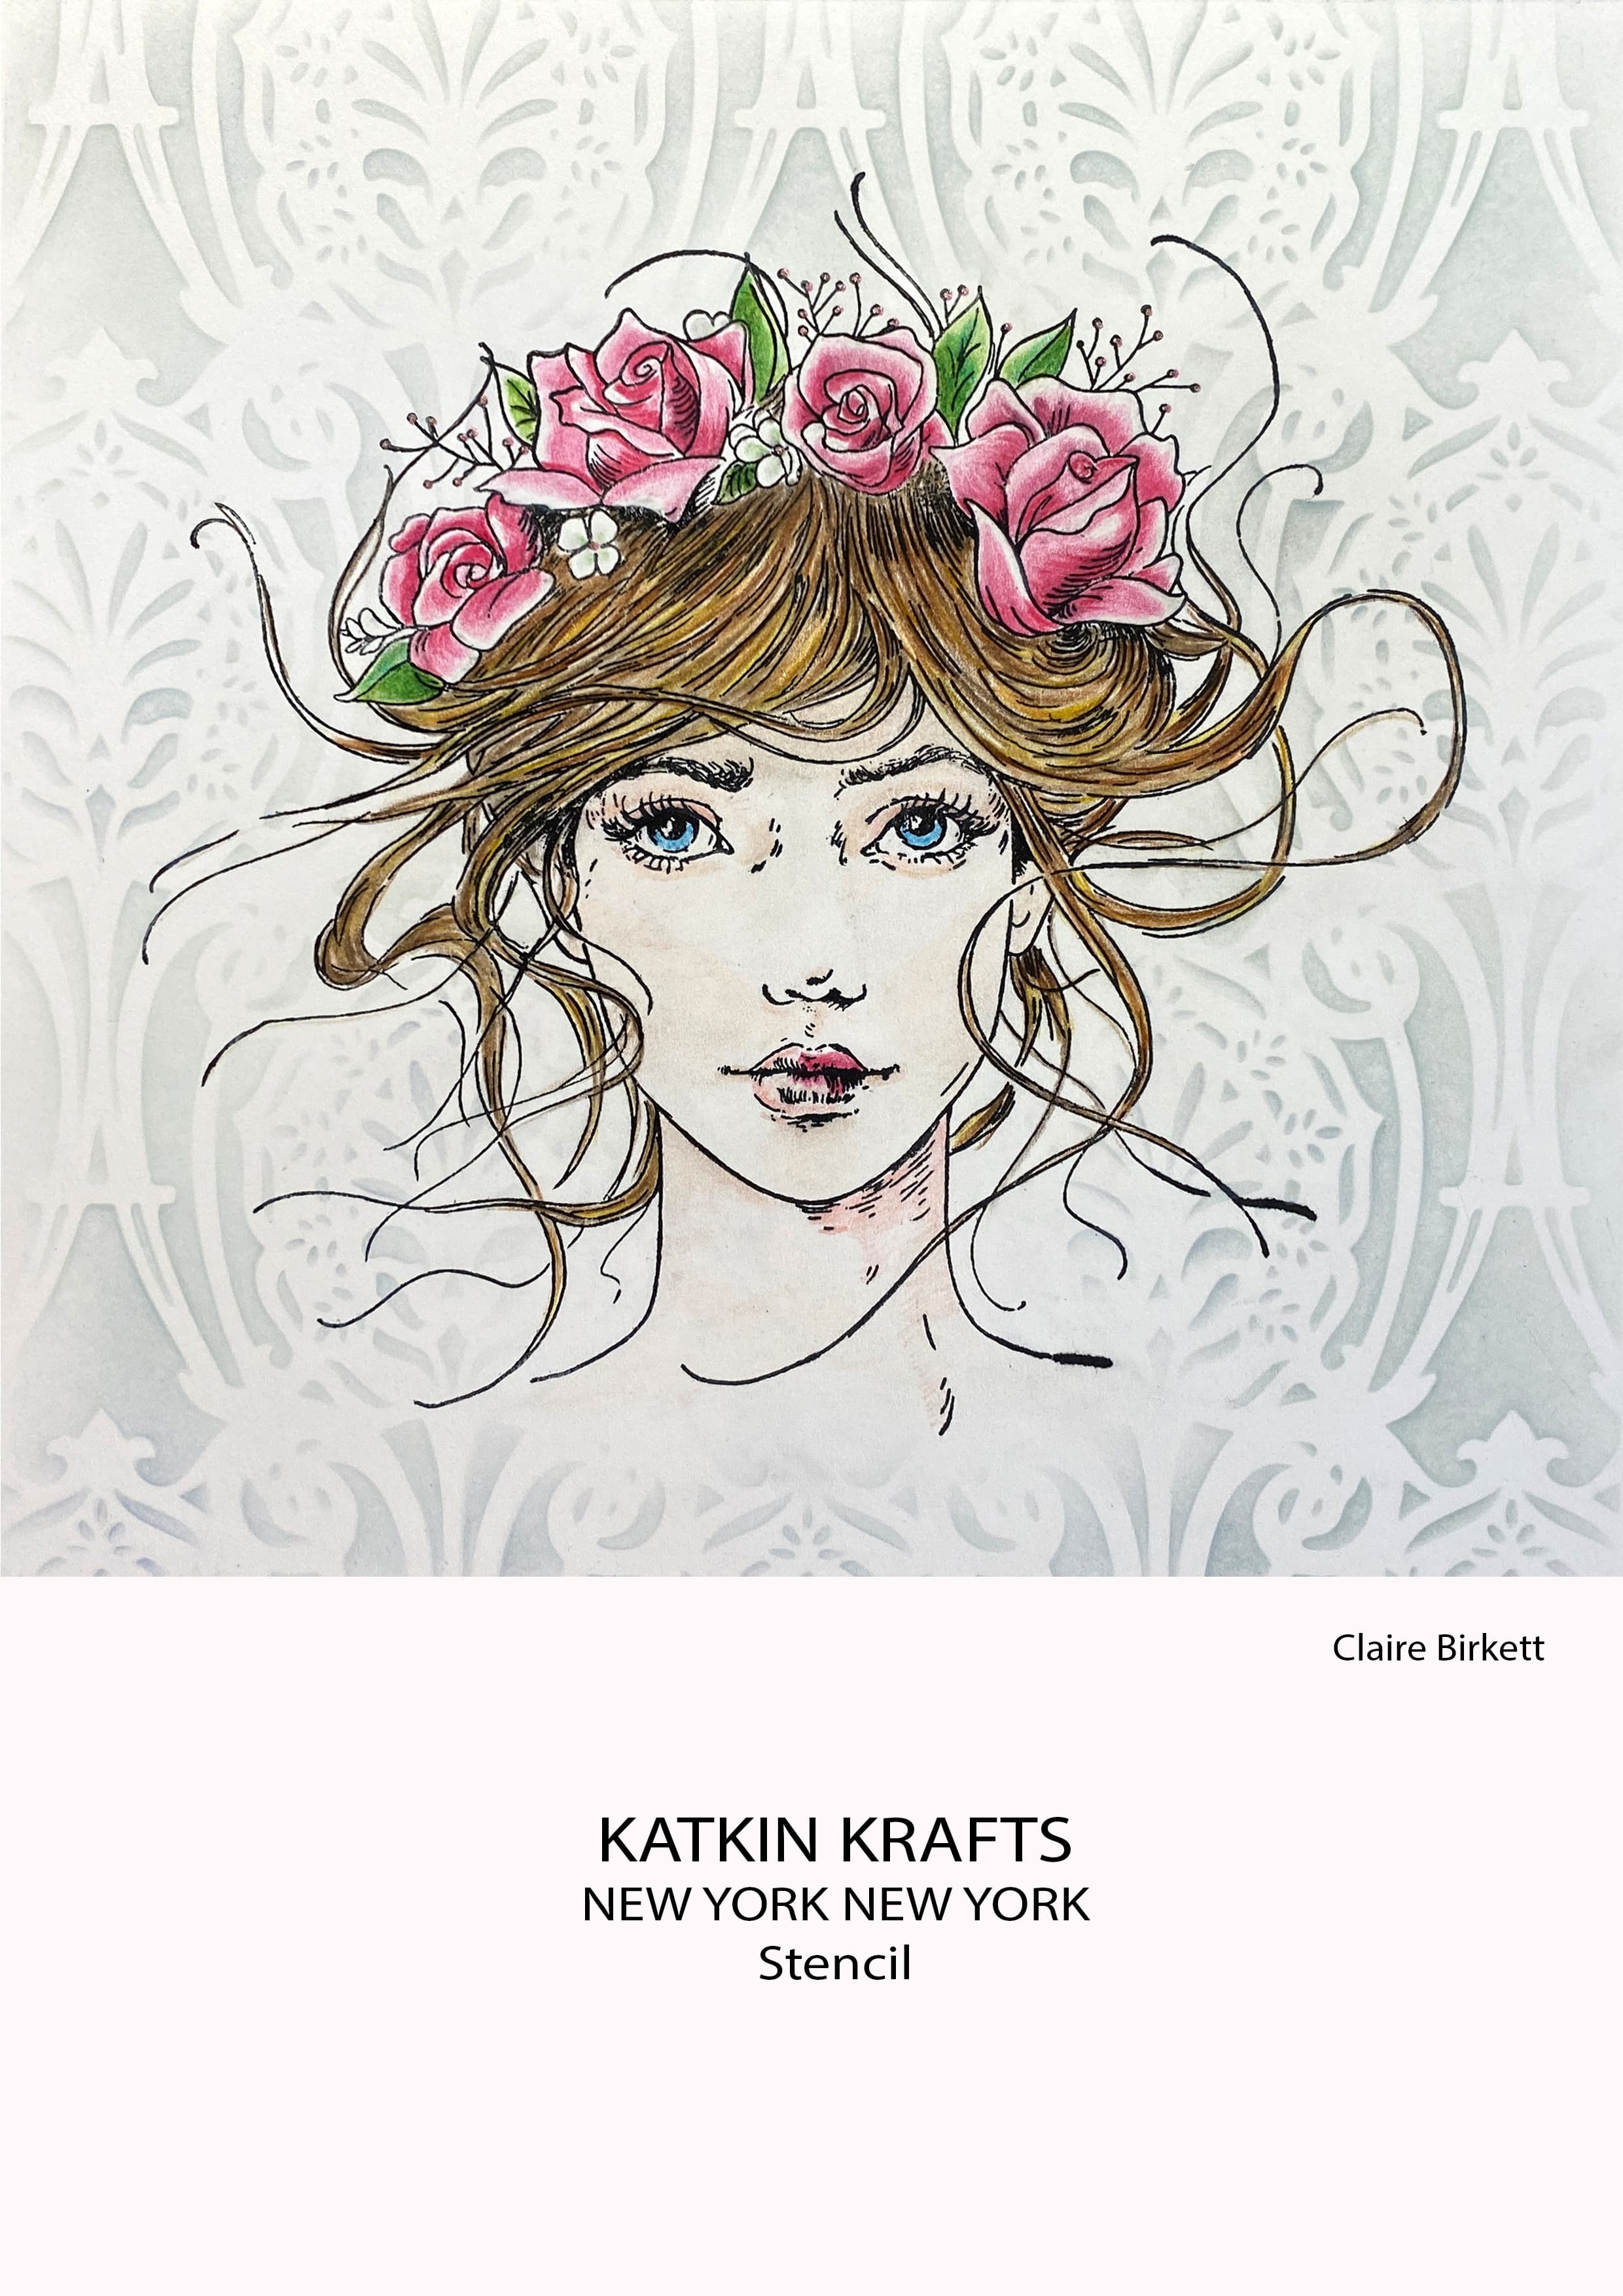 Katkin Krafts New York 7 in x 7 in Stencil